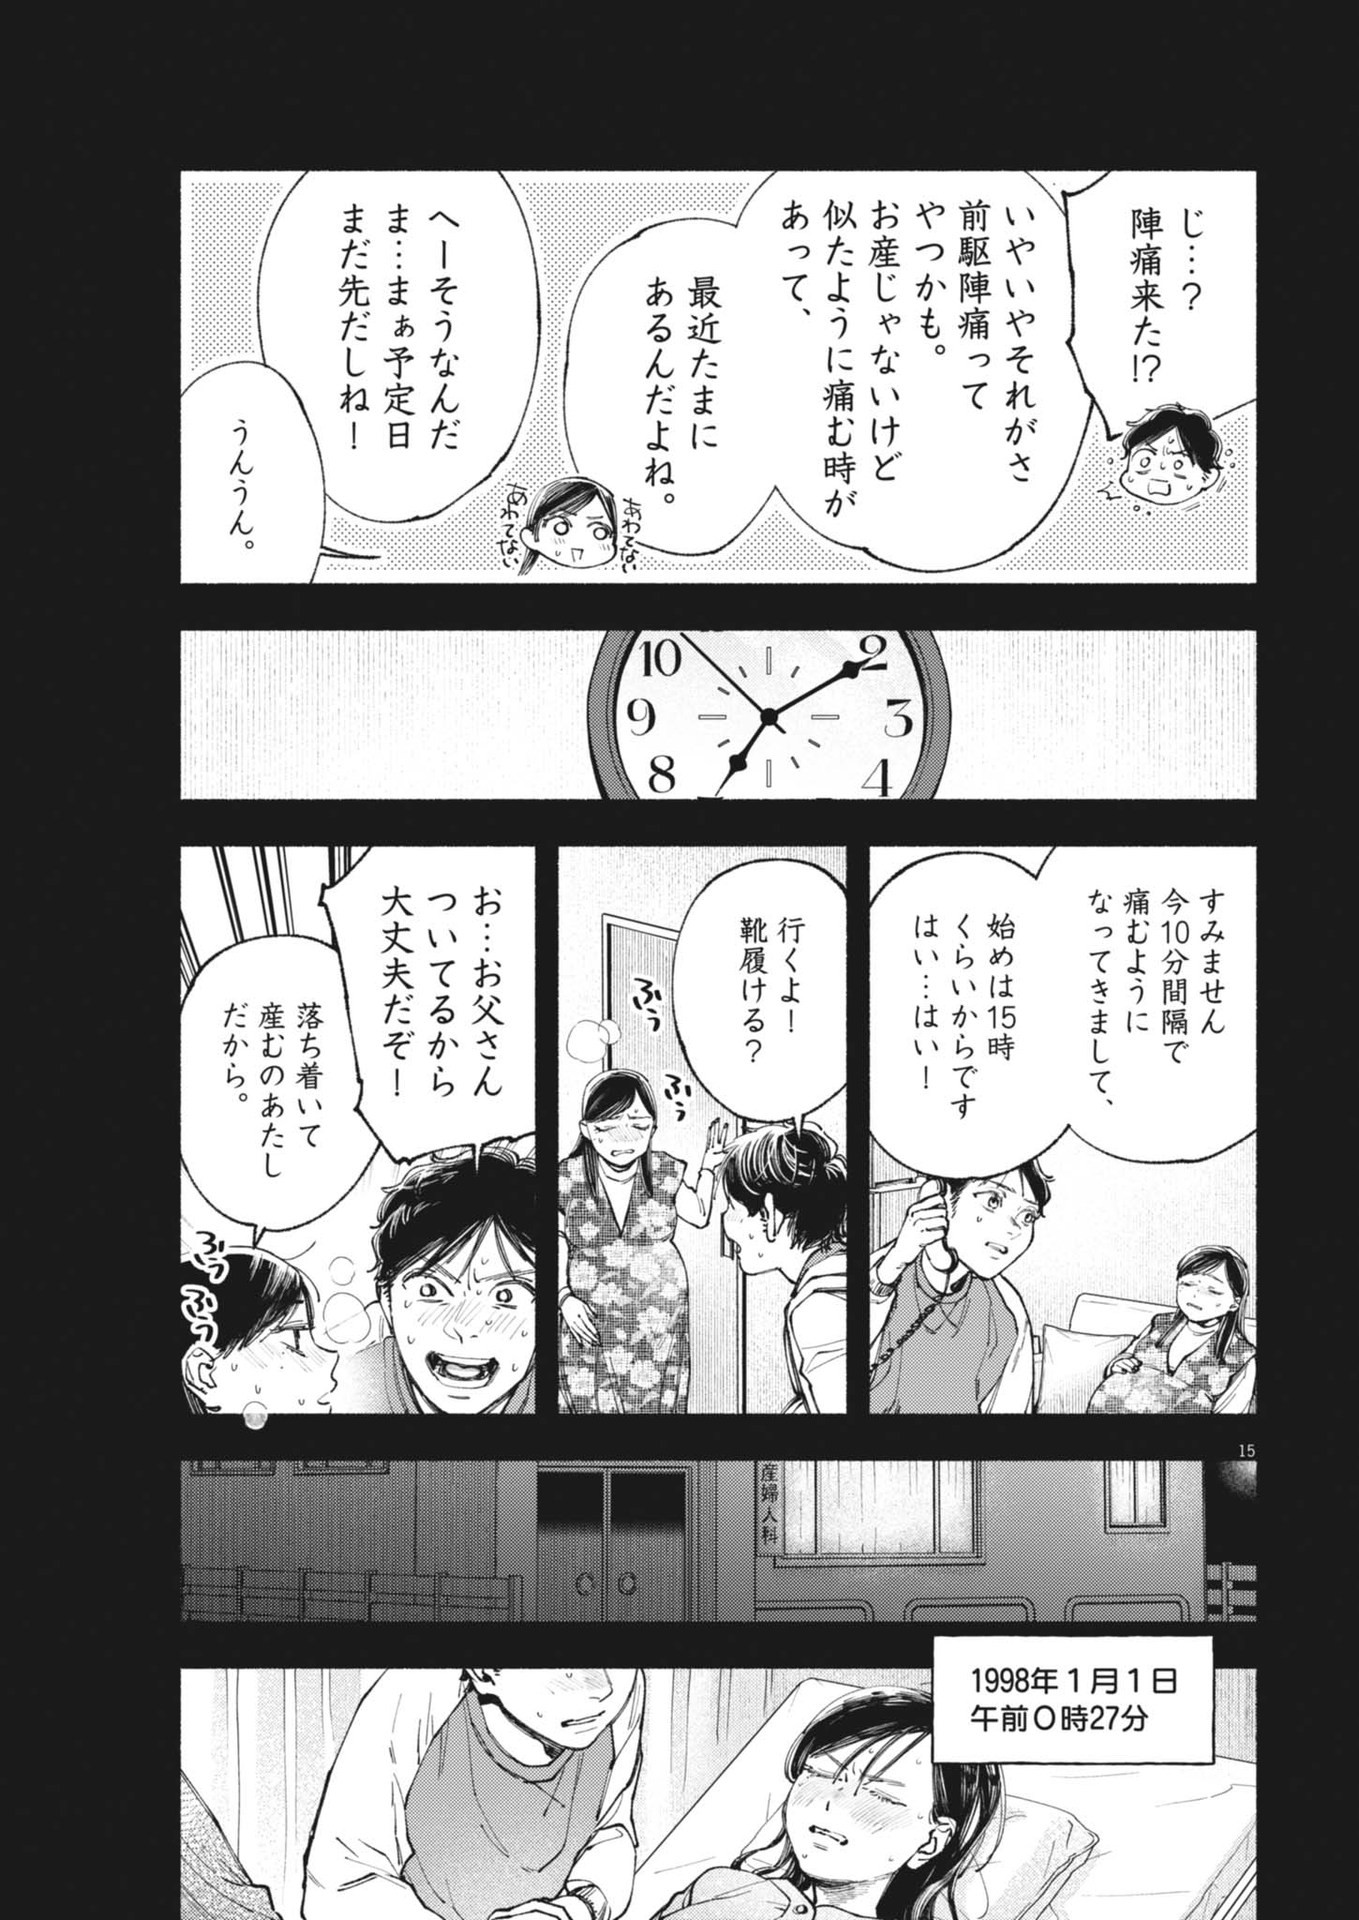 Konoyo wa Tatakau Kachi ga Aru  - Chapter 26 - Page 15